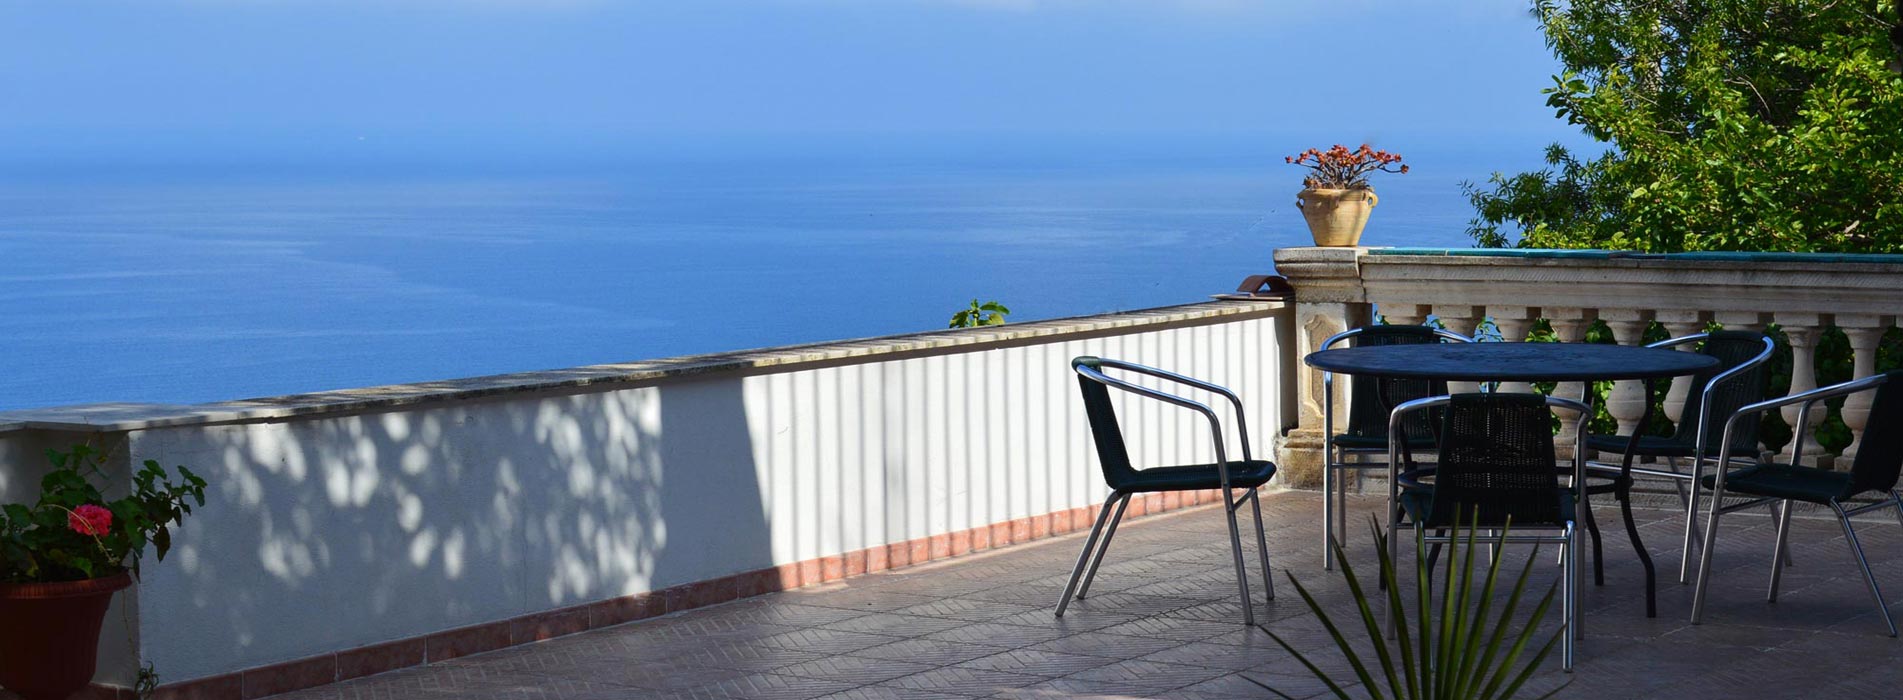 Ferienhaus Casale San Leo, Blick aufs Meer von einer der vielen Terrassen